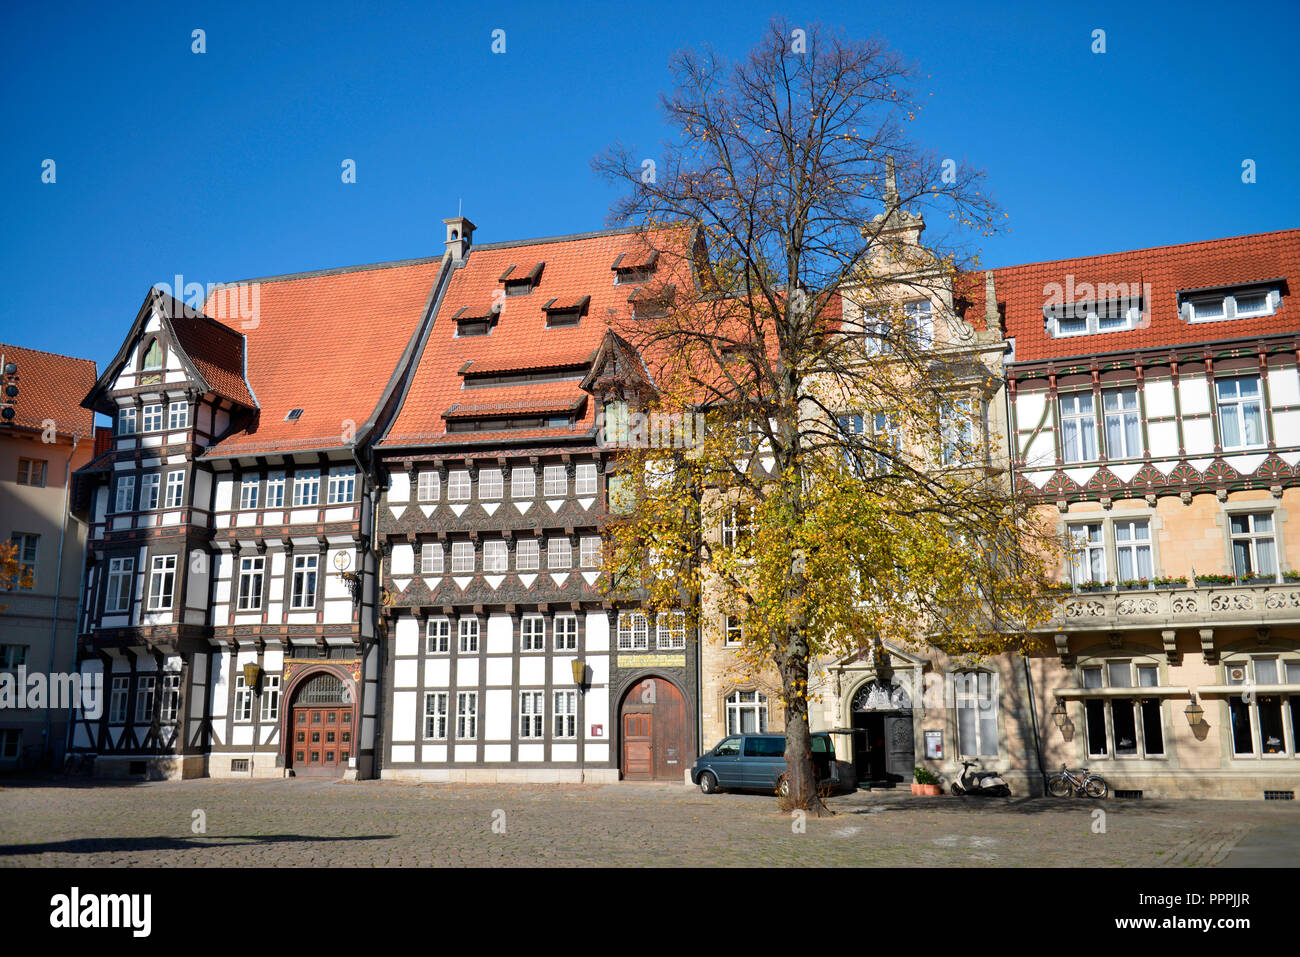 Huneborstelsches Haus, von Veltheimsches Haus, Burgplatz, Braunschweig, Niedersachsen, Deutschland Stock Photo